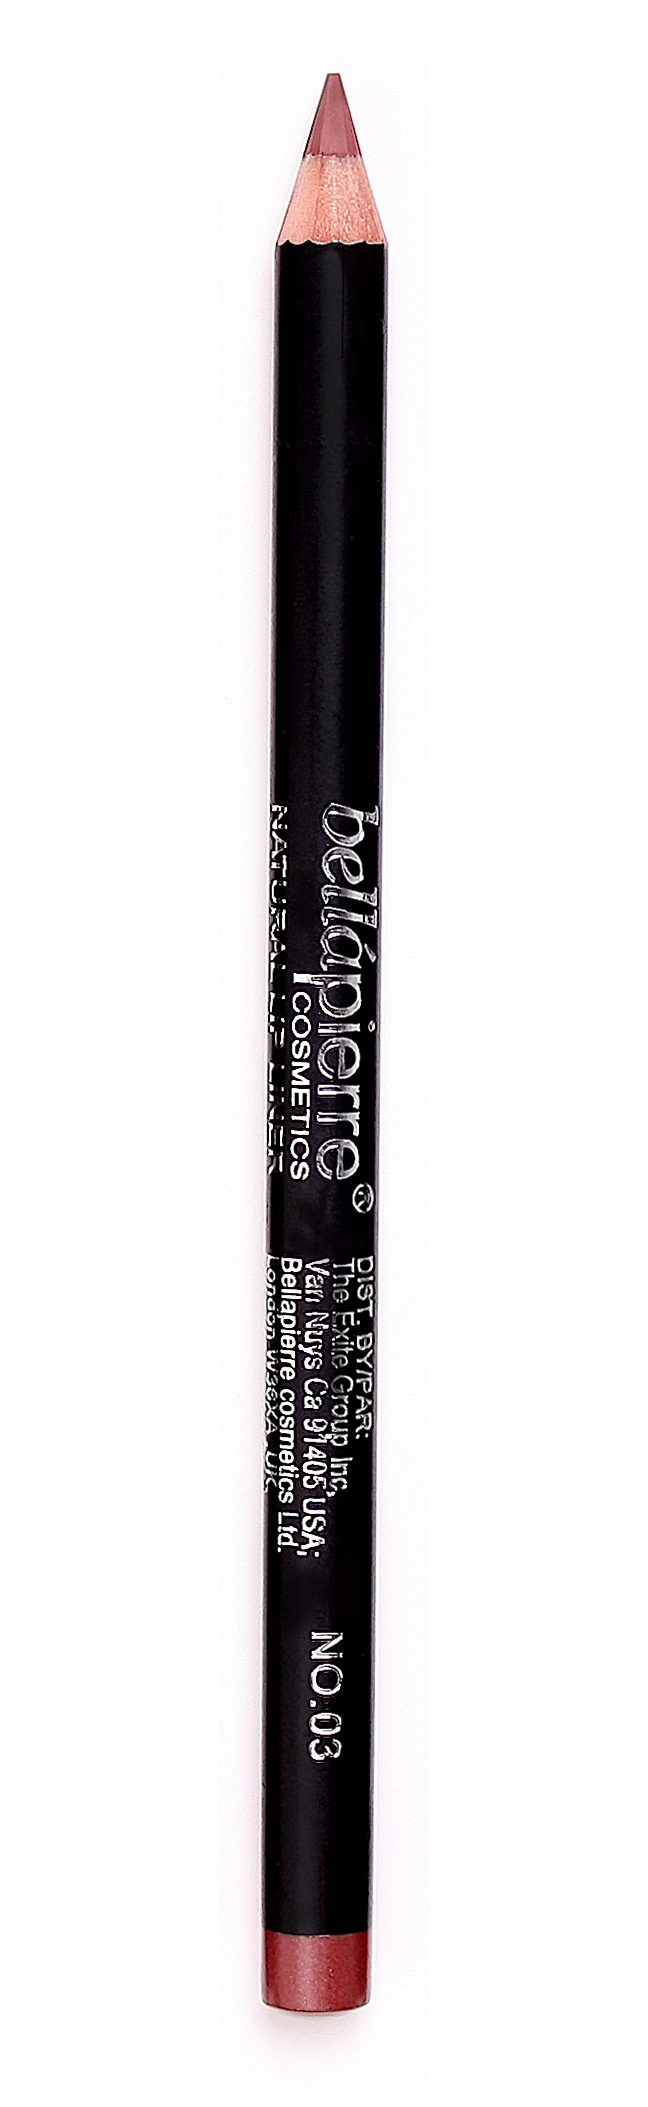 Bellapierre lip liner pencil 03 Cinammon